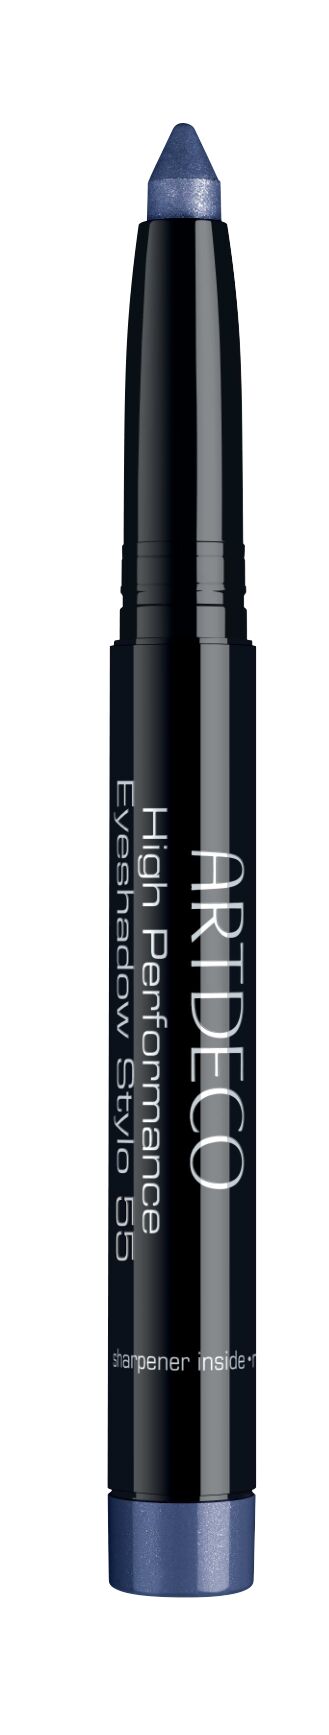 High performance Eyeshadow stylo #55